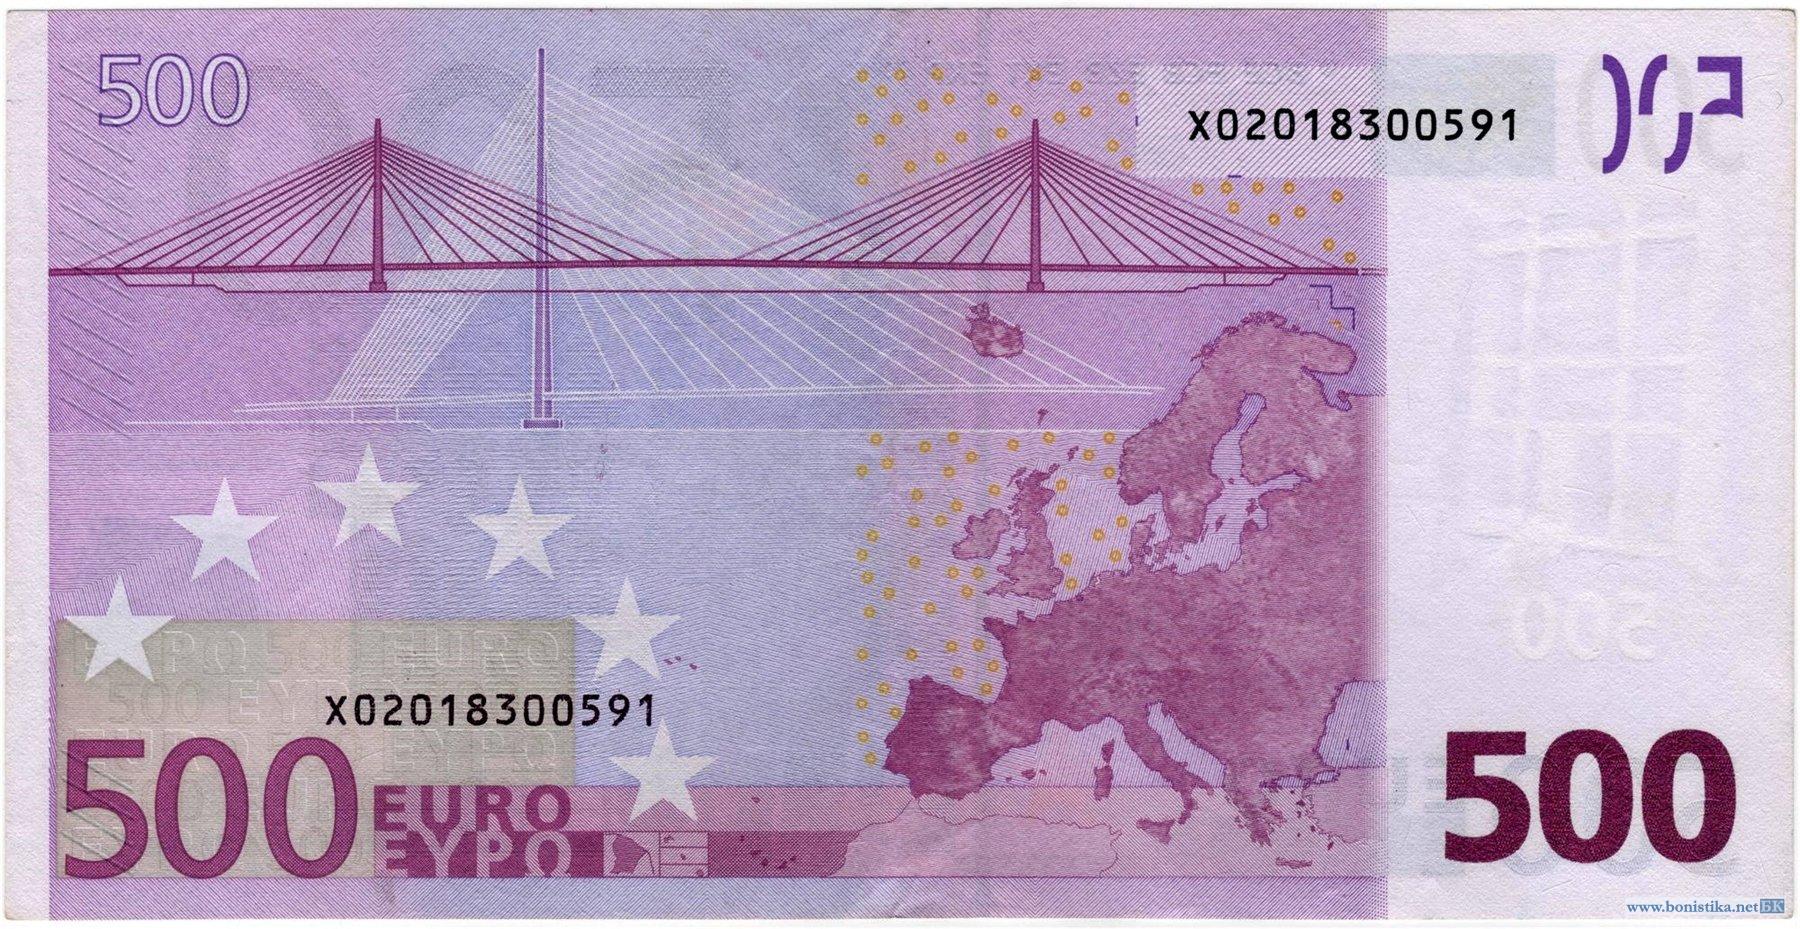 Банкнота 2002 года номиналом 500 евро: цвет – фиолетовый, архитектурный стиль – современная архитектура. Источник https://bonistika.net/